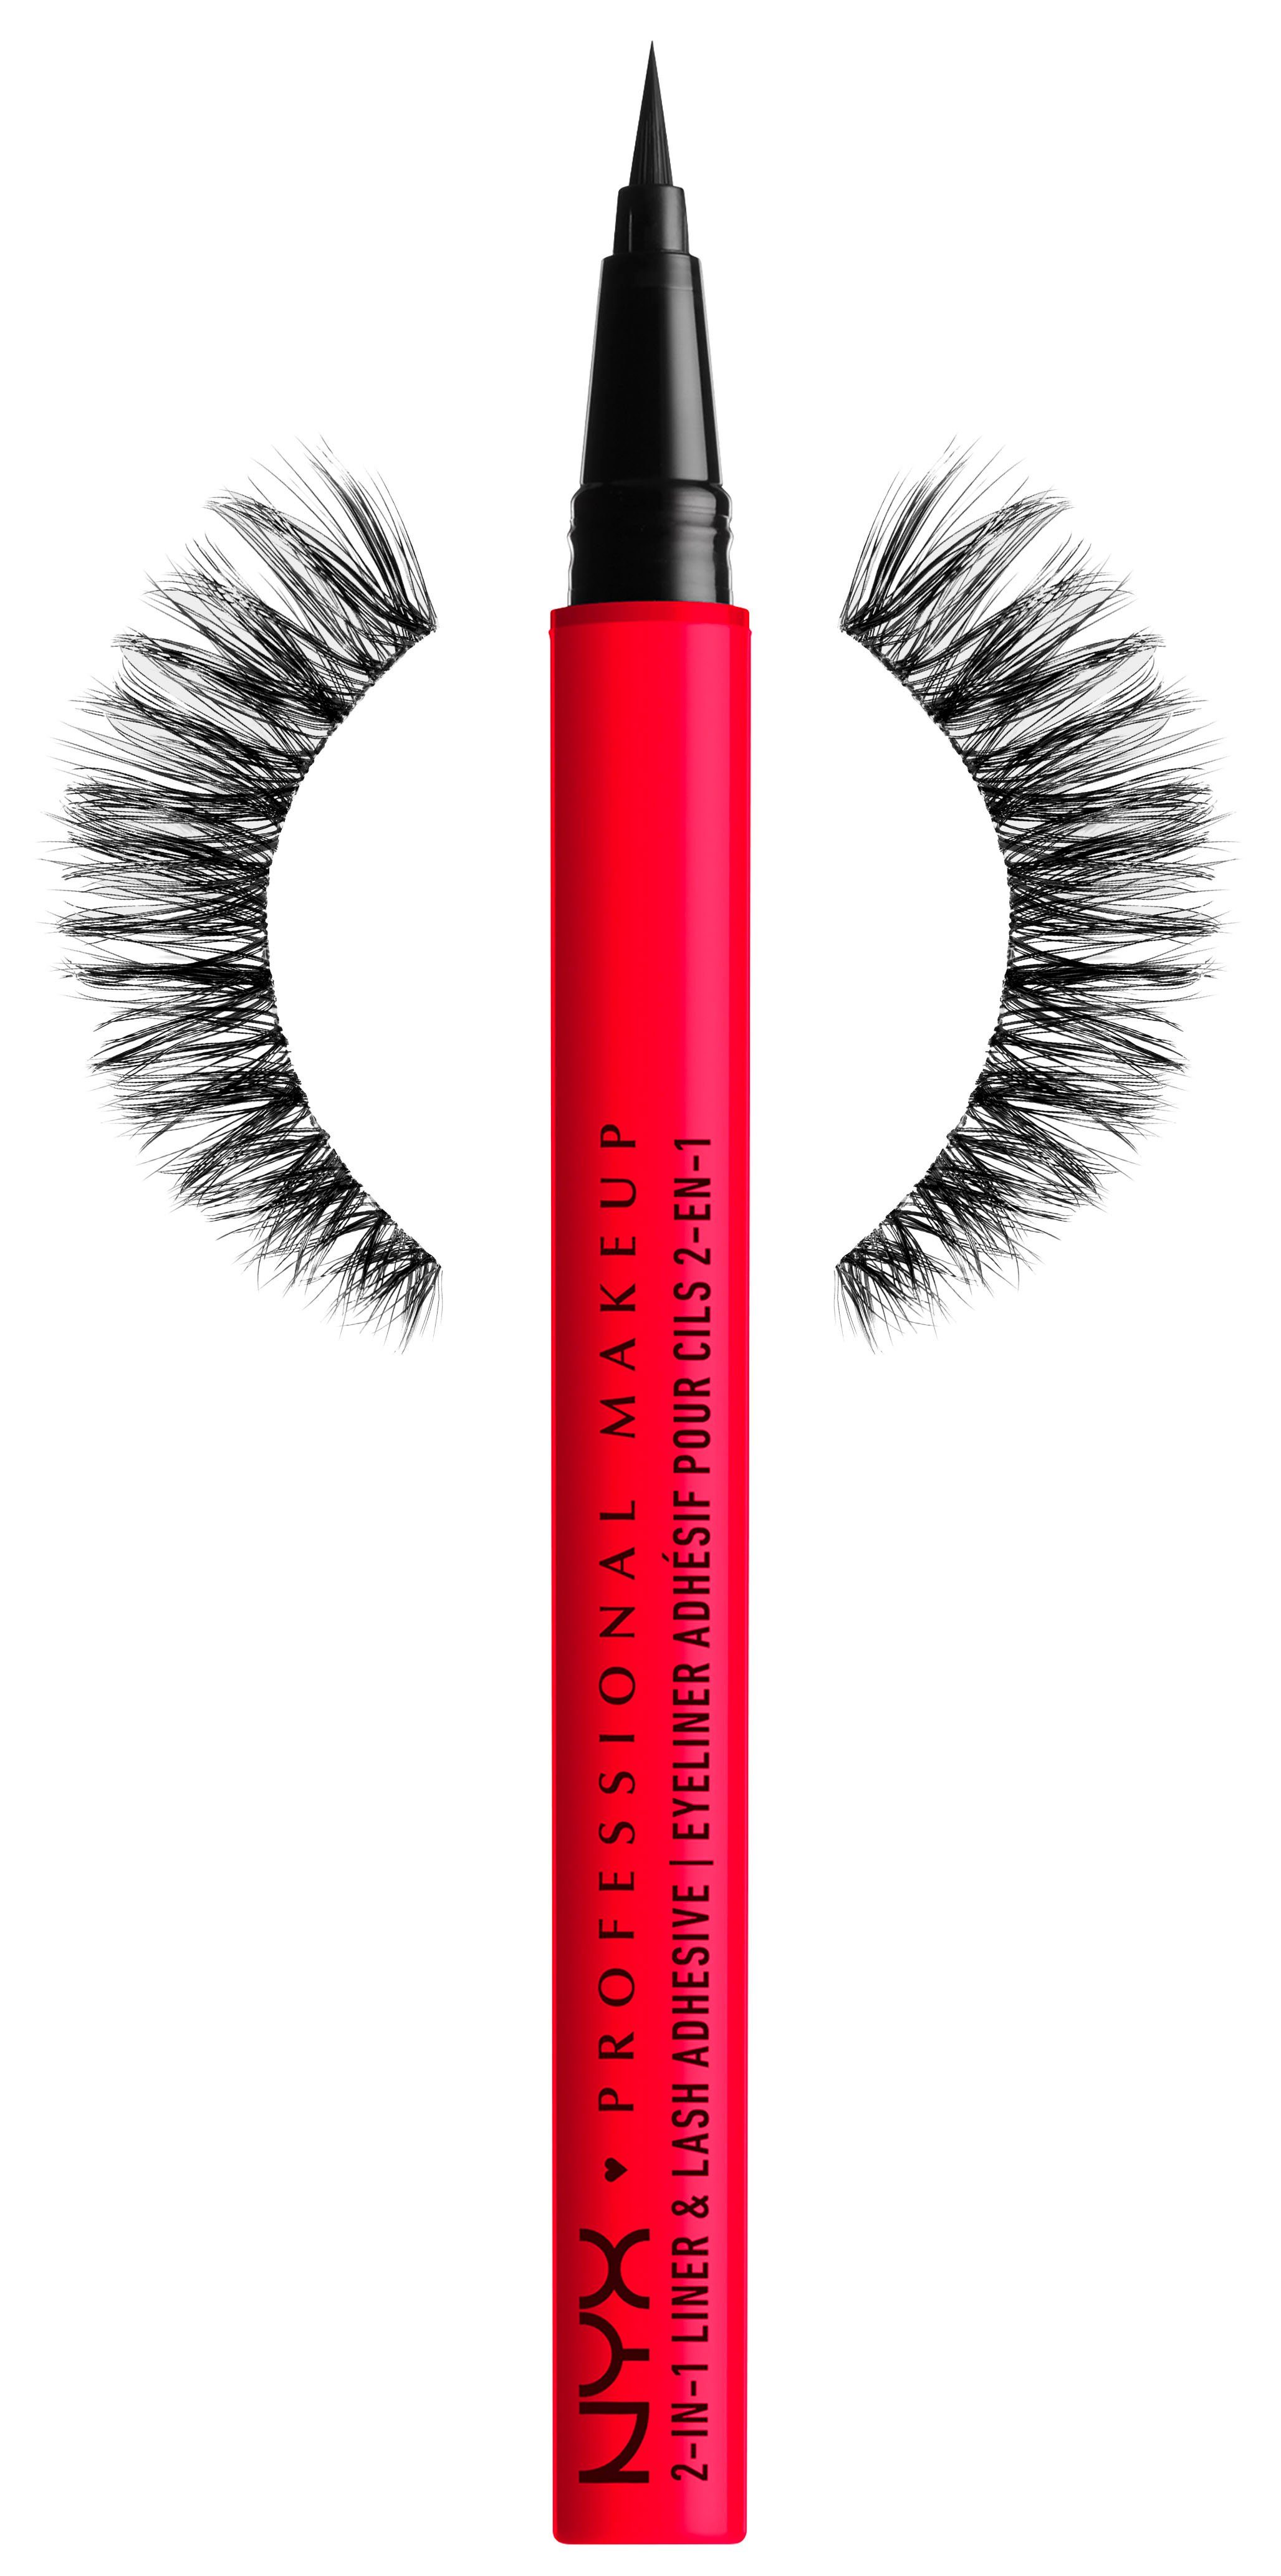 Makeup Flirt NYX Professional Feathery Kit Kosmetik-Set NYX